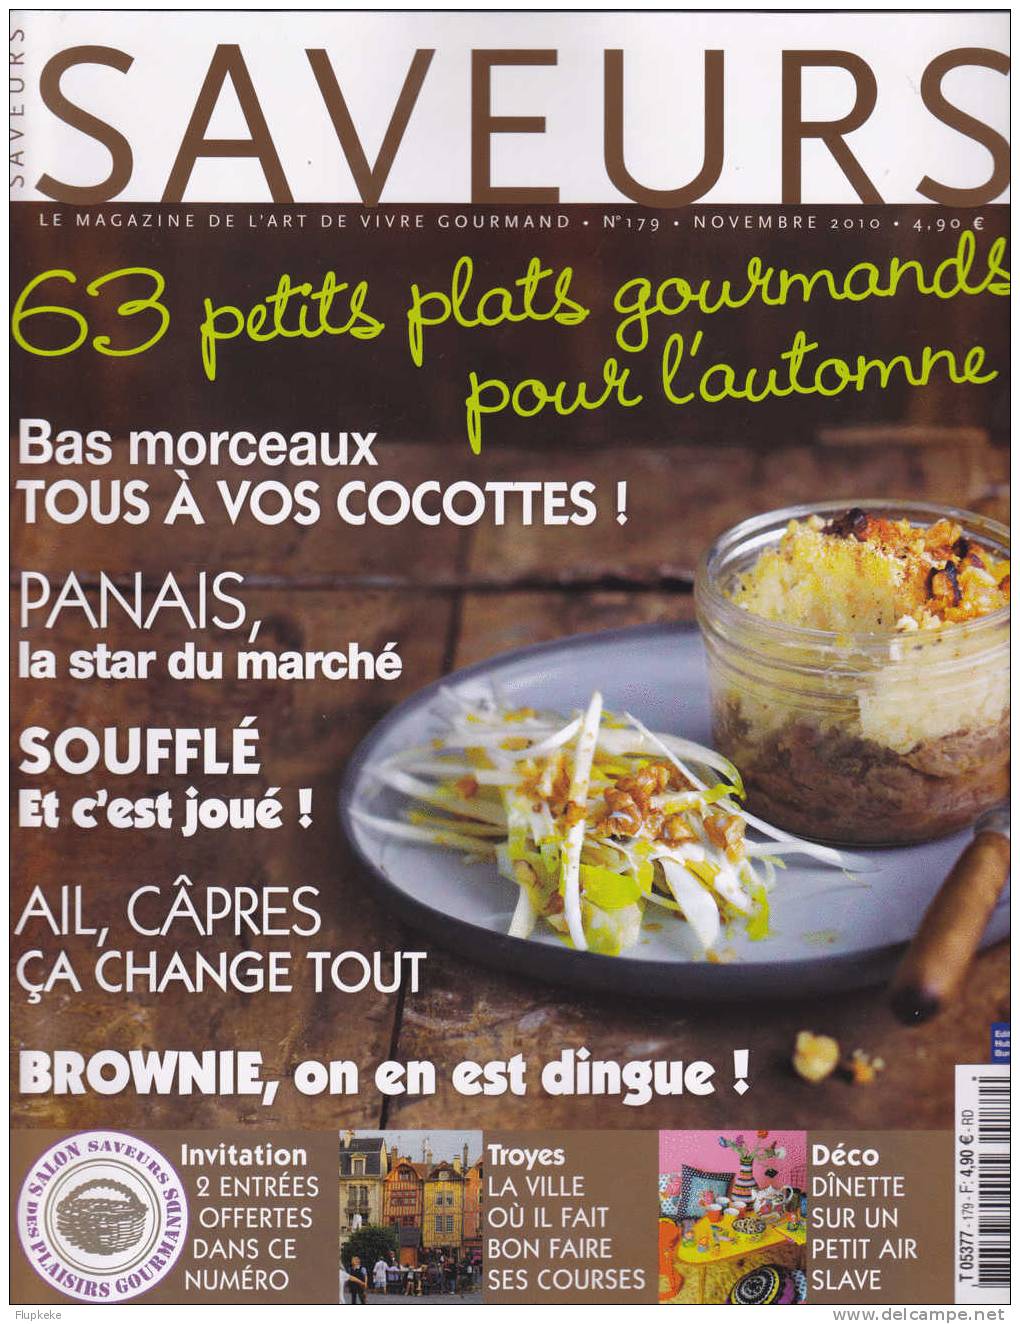 Saveurs 179 Novembre 2010 Panais La Star Du Marché Soufflé Ail Câpres Brownie Troyes - Cooking & Wines